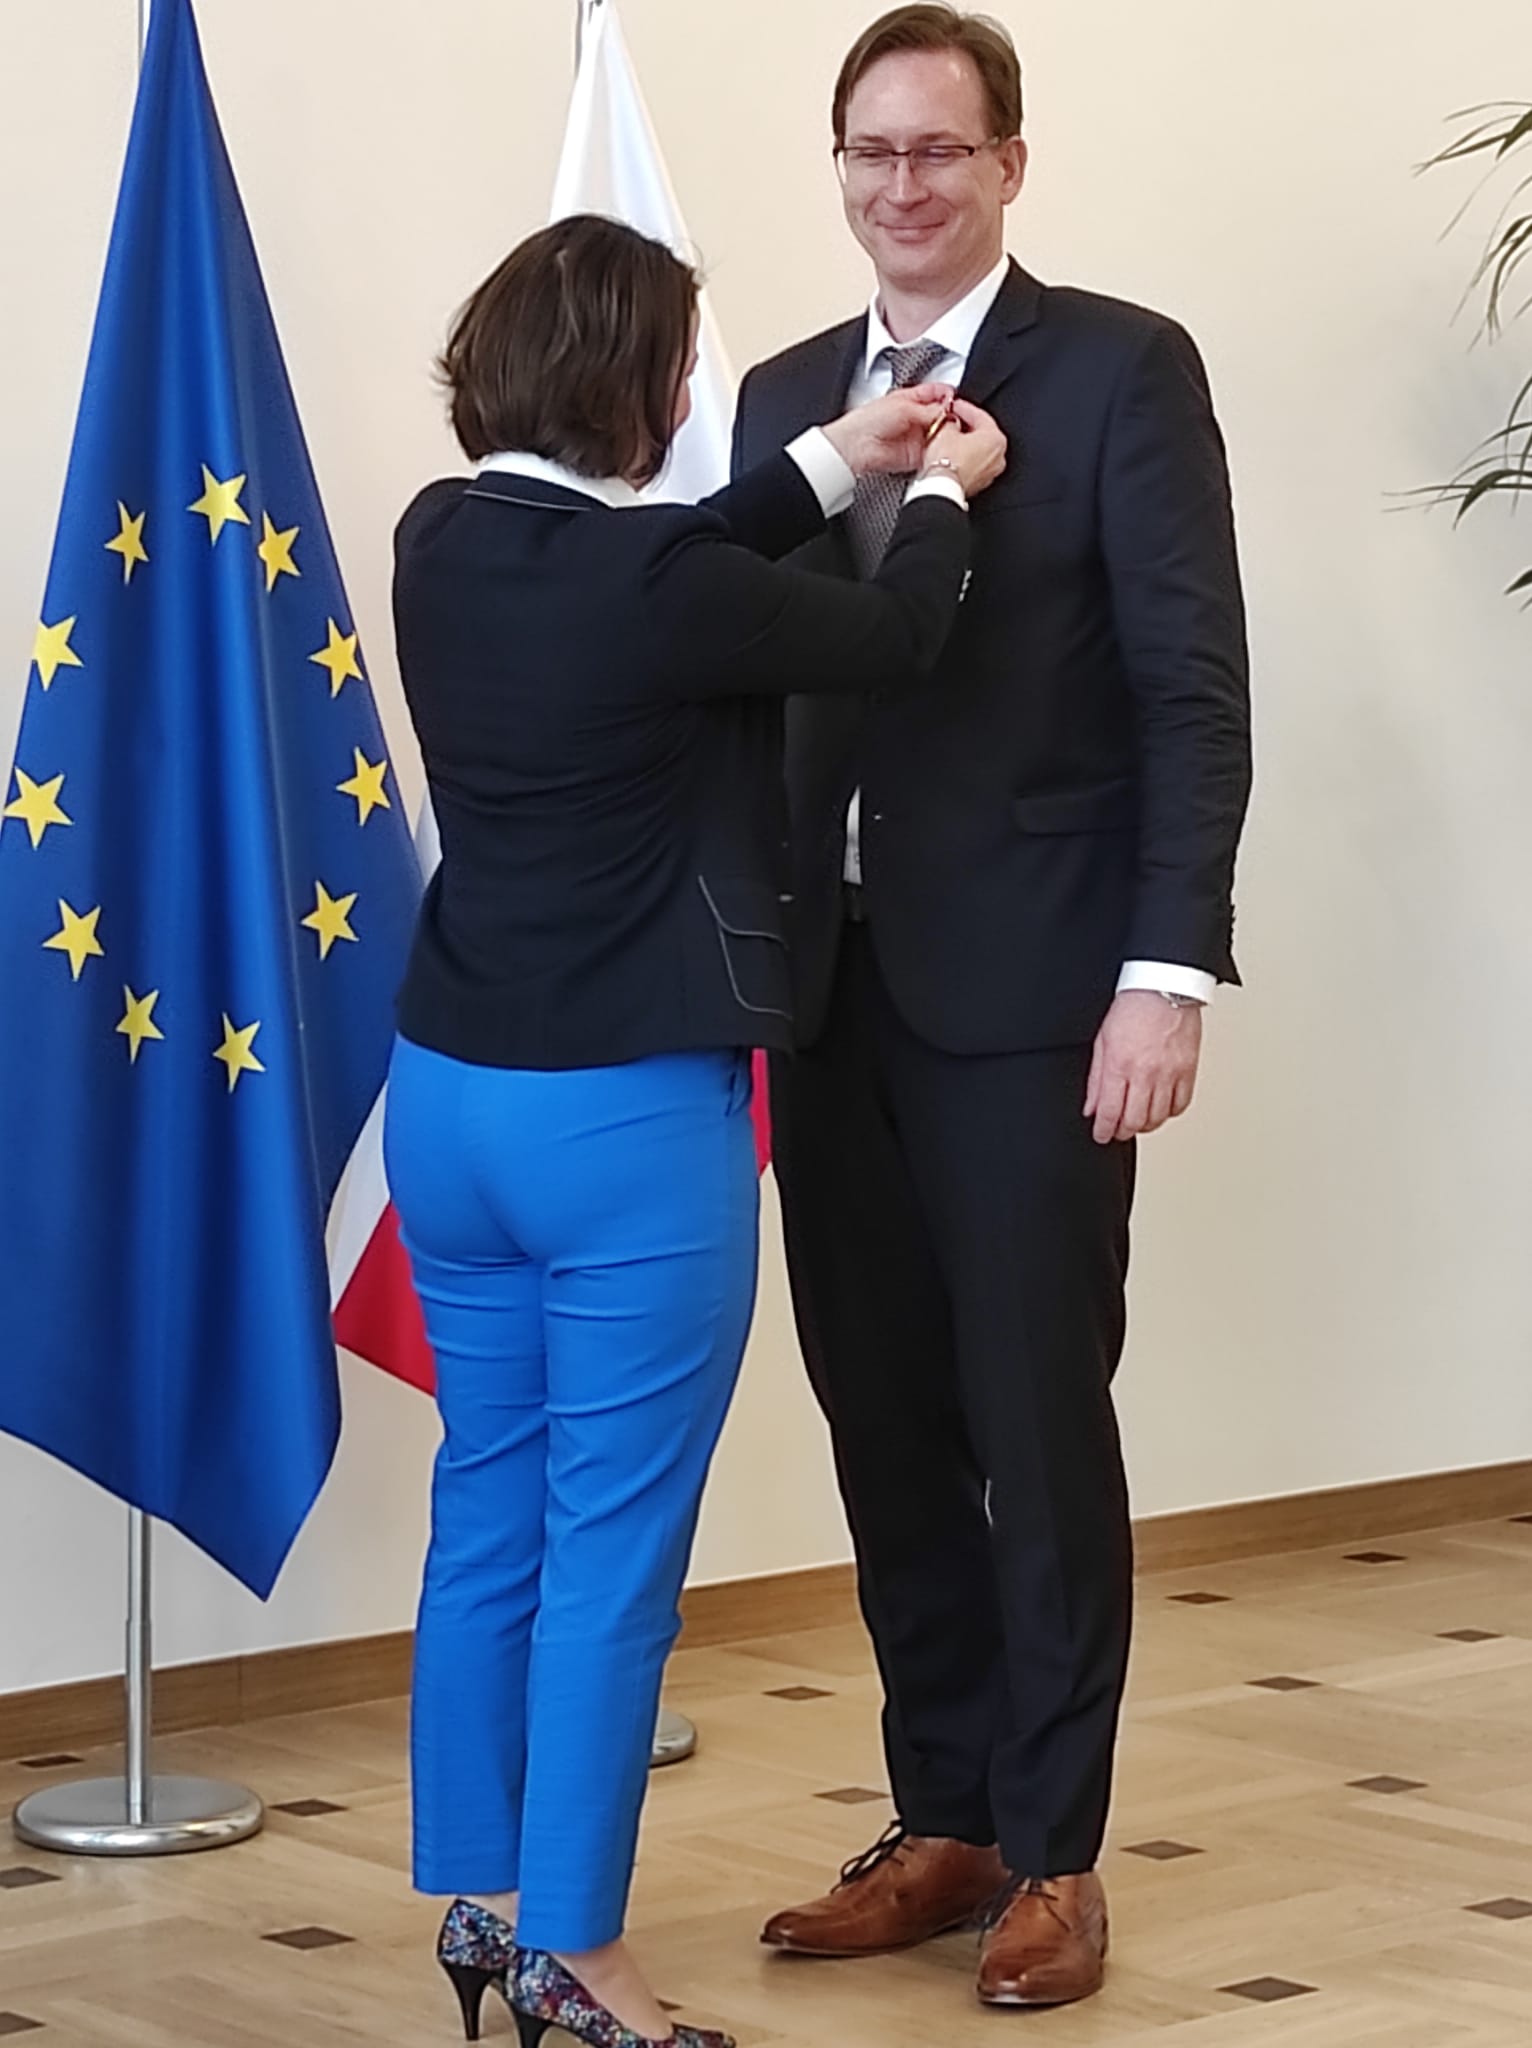 Uśmiechnięty mężczyzna ubrany w garnitur odbiera gratulacje od elegancko ubranej kobiety. Mężczyzna i kobieta stoją na tle flagi polski oraz Unii Europejskiej.